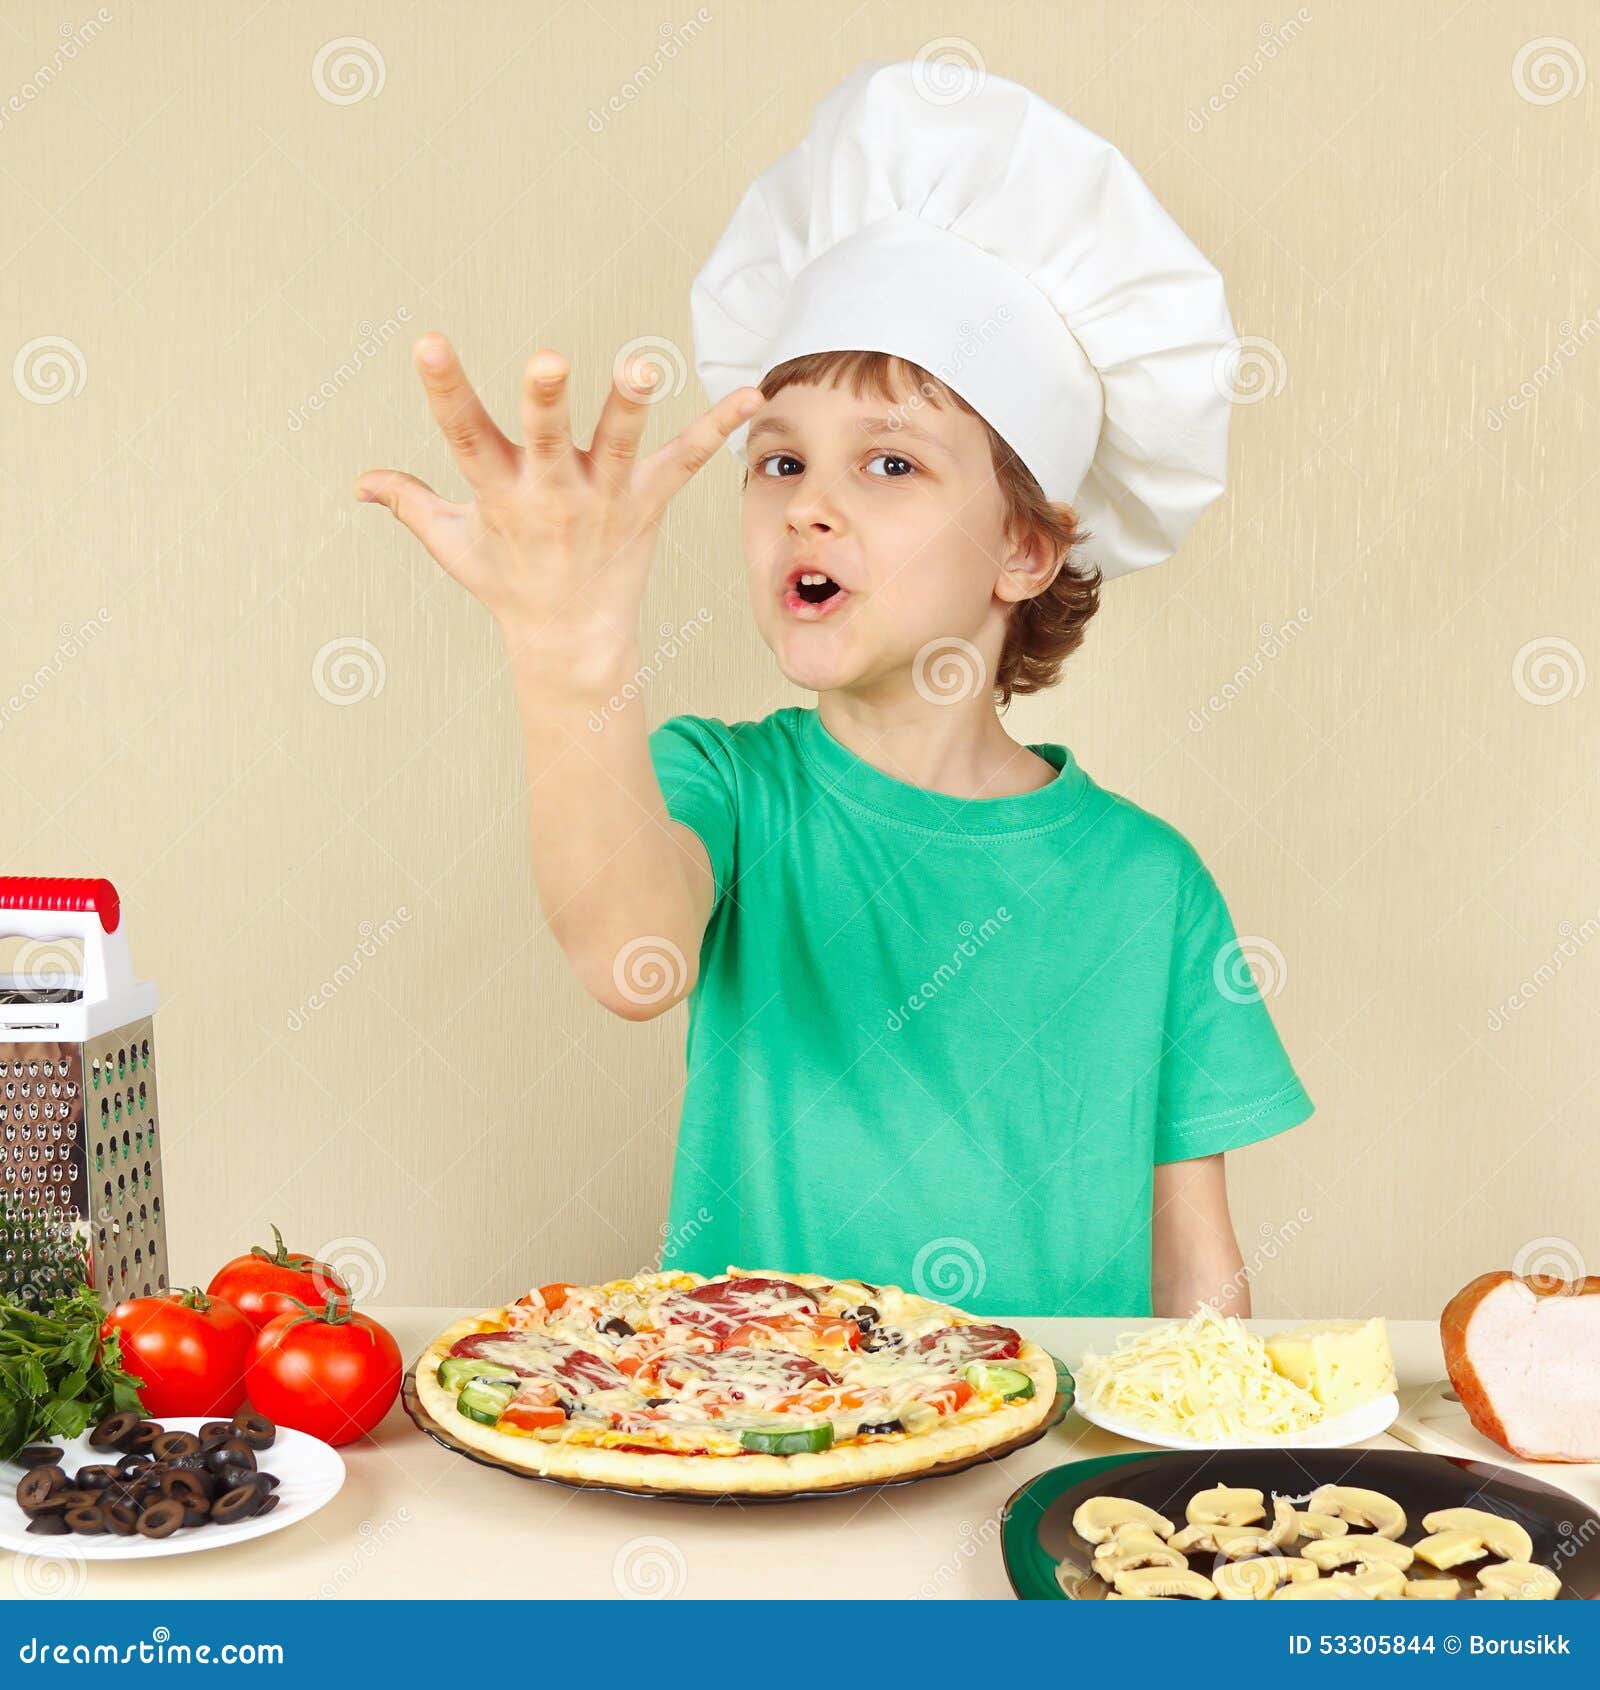 Человек делающий пиццу. Дети делают пиццу. Детки делают пиццу. Кулинар дети делают пиццу. Смешной повар пиццы.